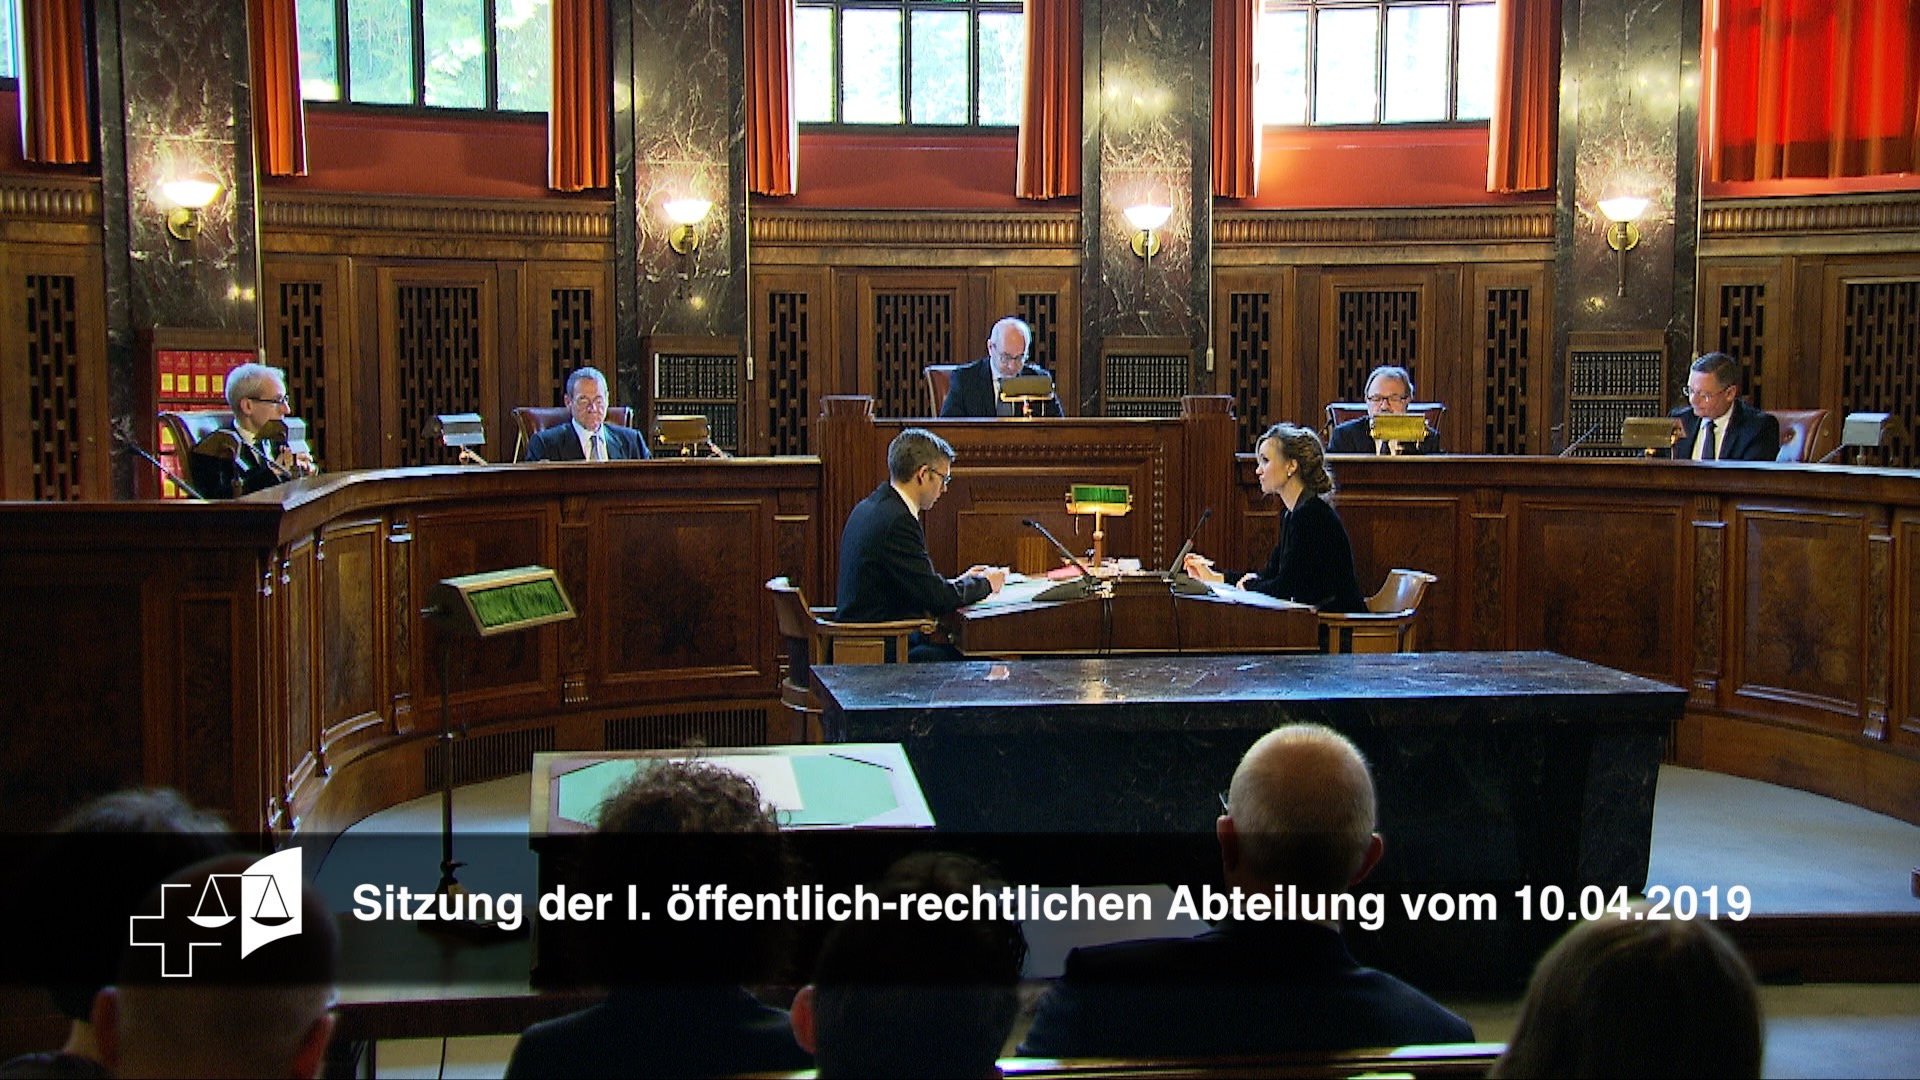 Конституционный третейский суд. Федеральный Верховный суд Швейцарии. Федеральный суд суд в Швейцарии. Парламент Швейцарии заседание. Федеральный суд Швейцарии внутри.